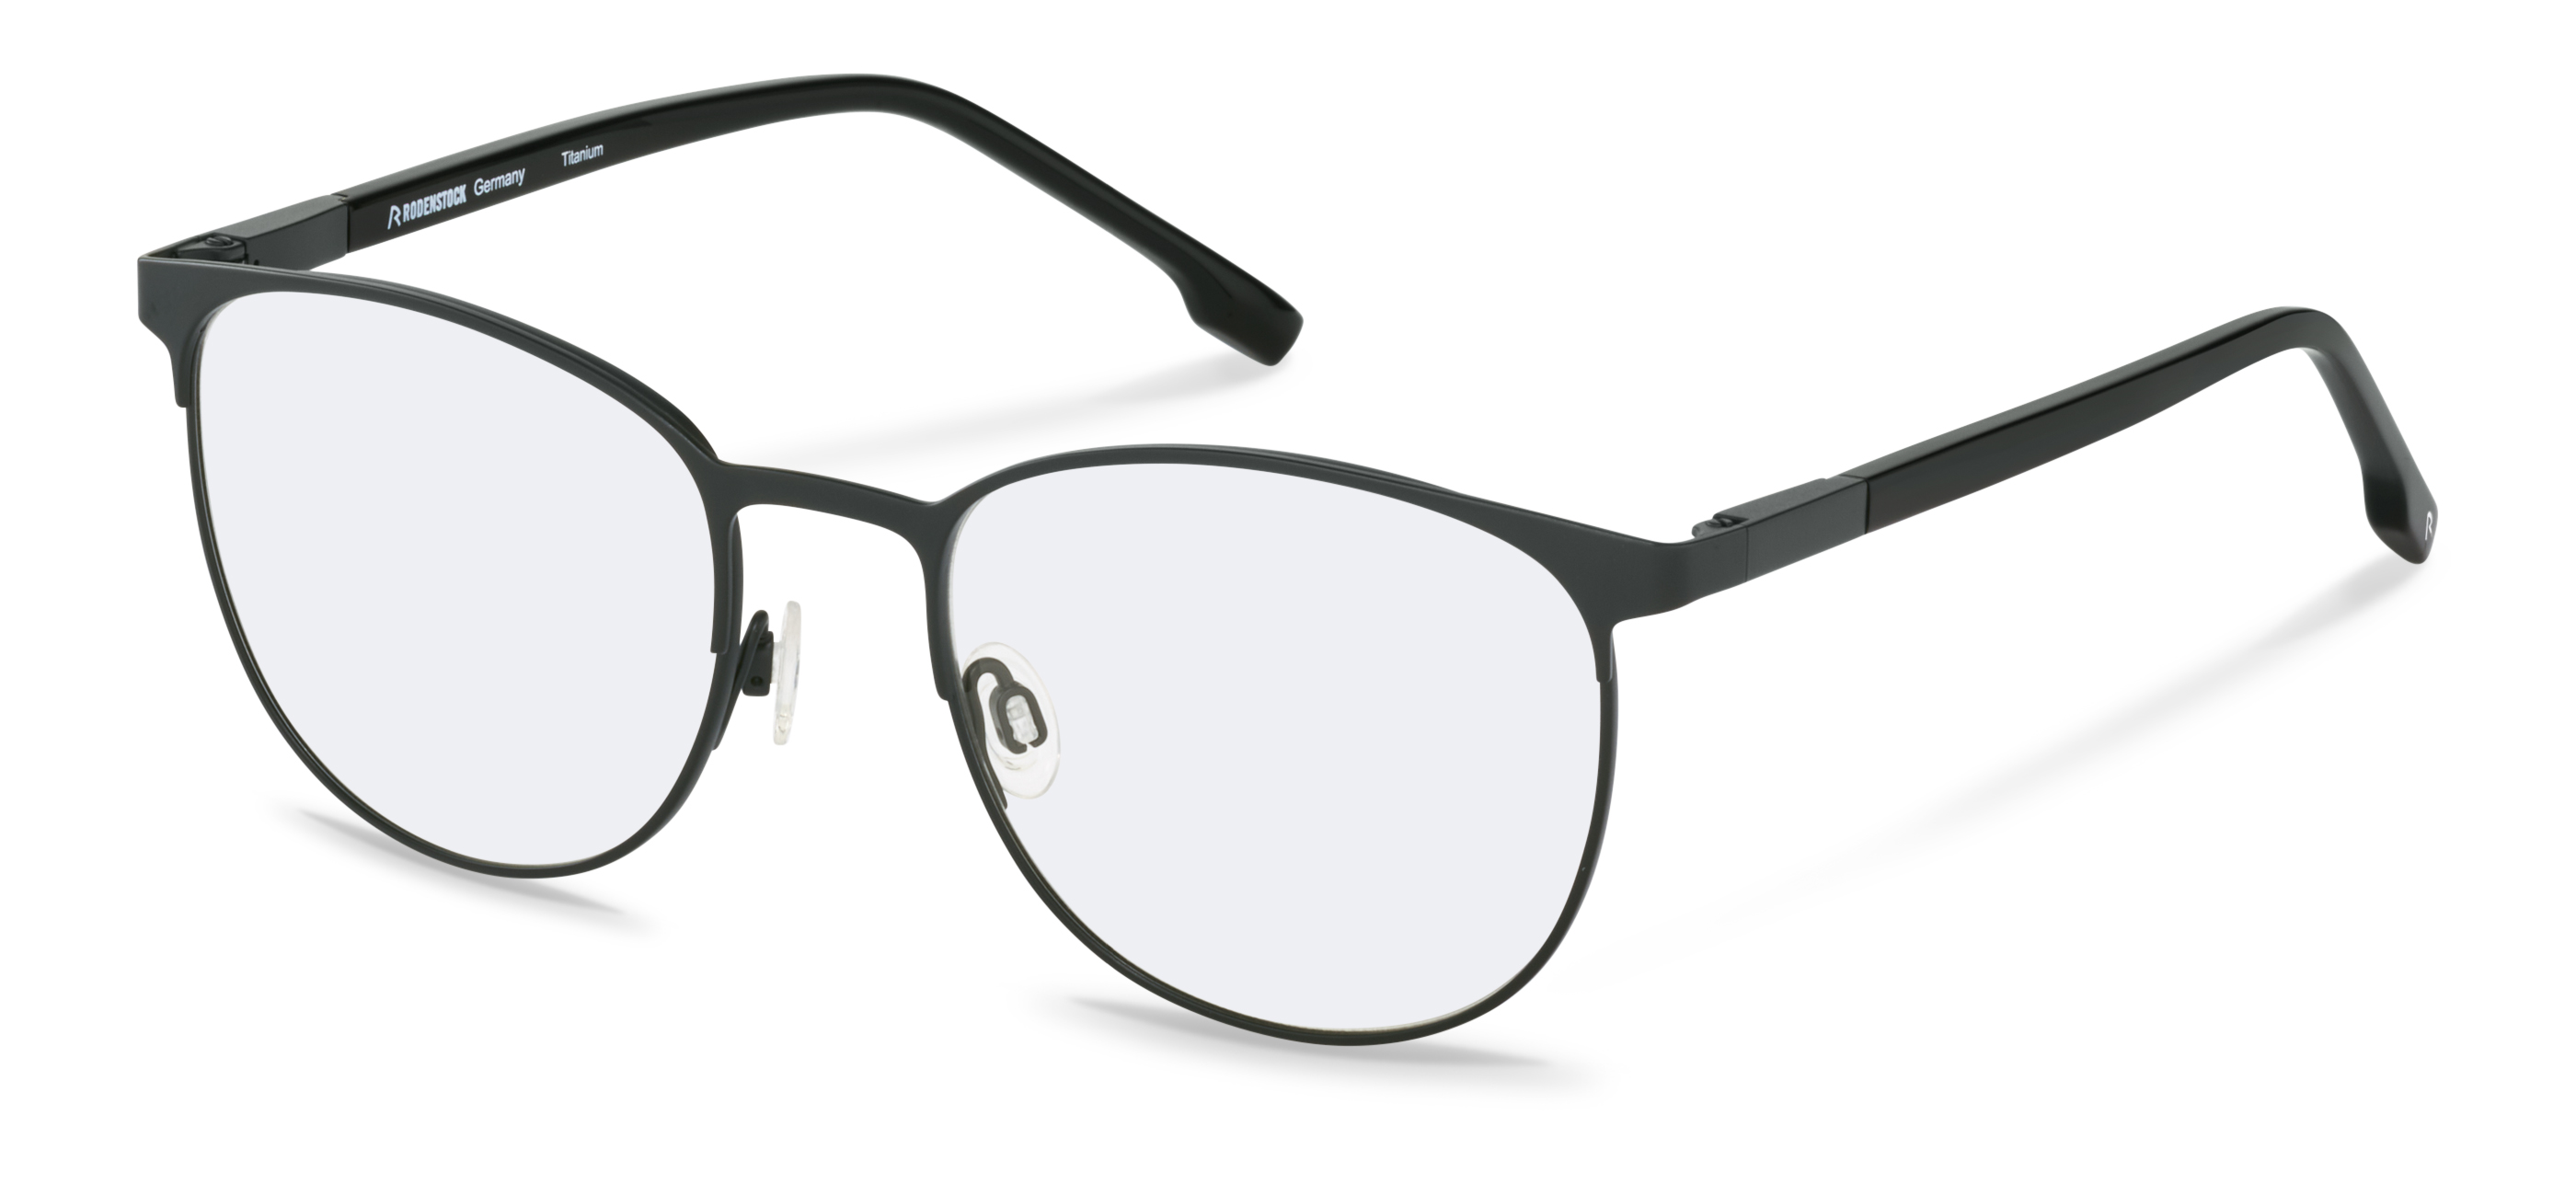 Rodenstock-Korekční brýle-R7148-black